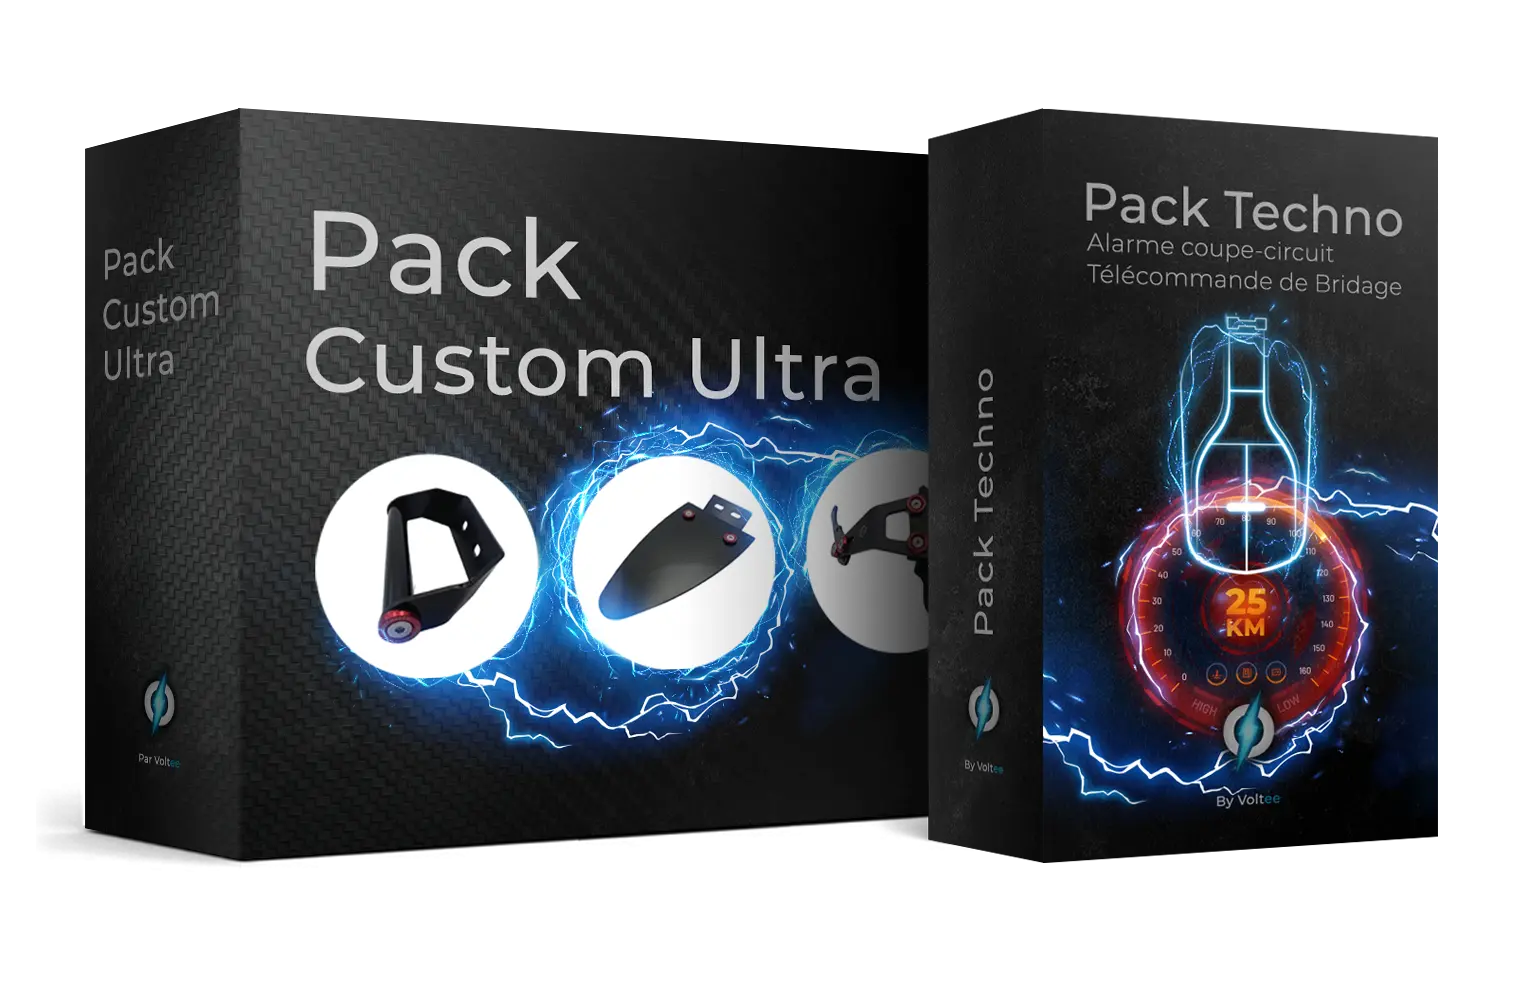 packs custom